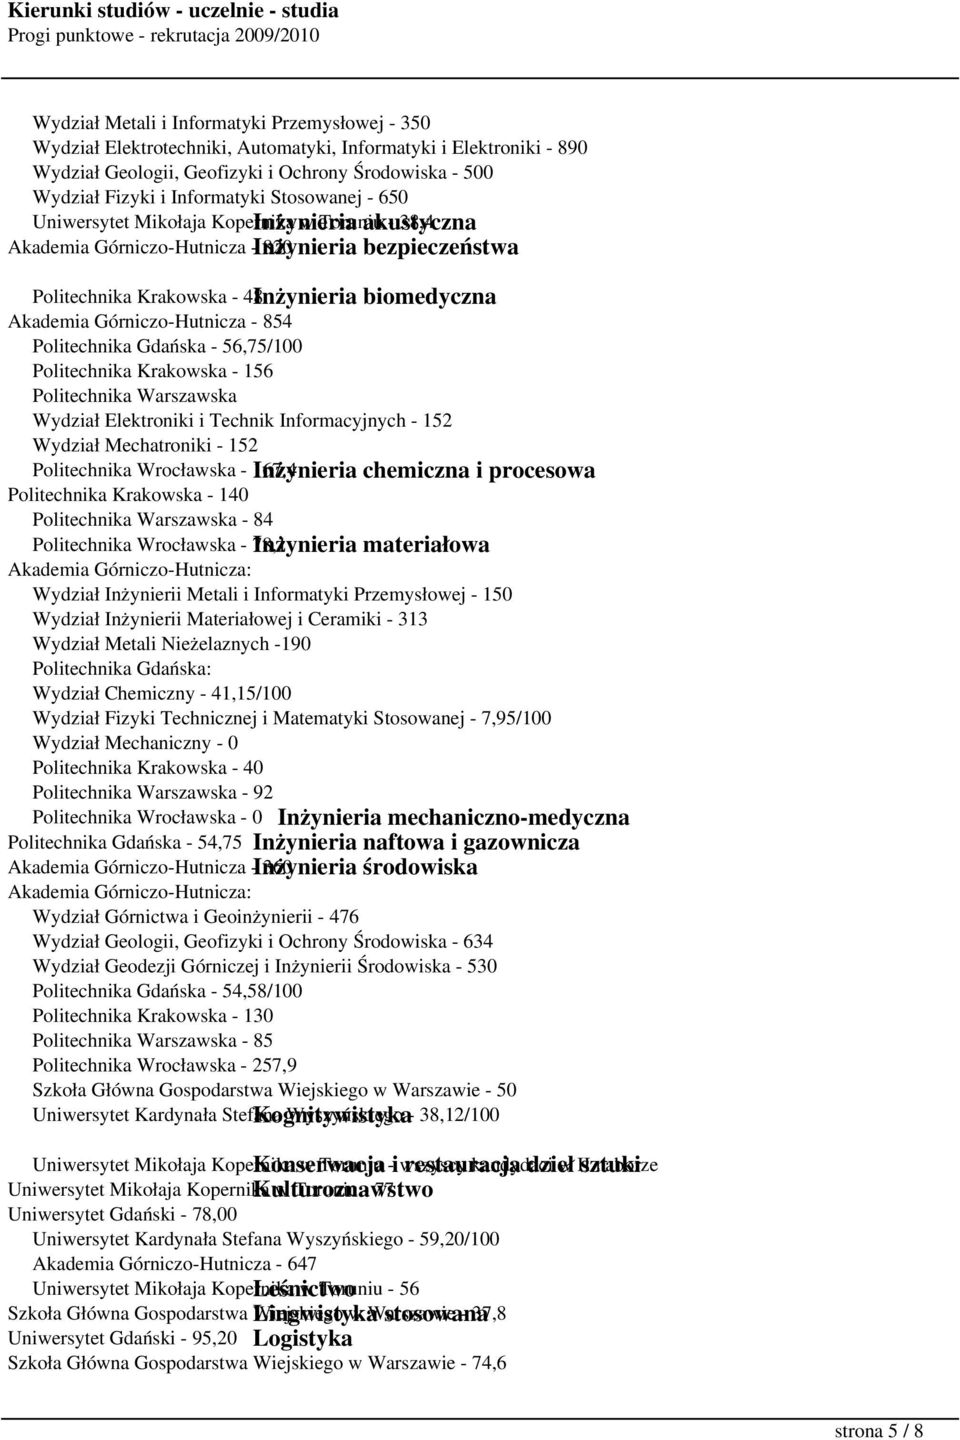 biomedyczna Akademia Górniczo-Hutnicza - 854 Politechnika Gdańska - 56,75/100 Politechnika Krakowska - 156 Politechnika Warszawska Wydział Elektroniki i Technik Informacyjnych - 152 Wydział